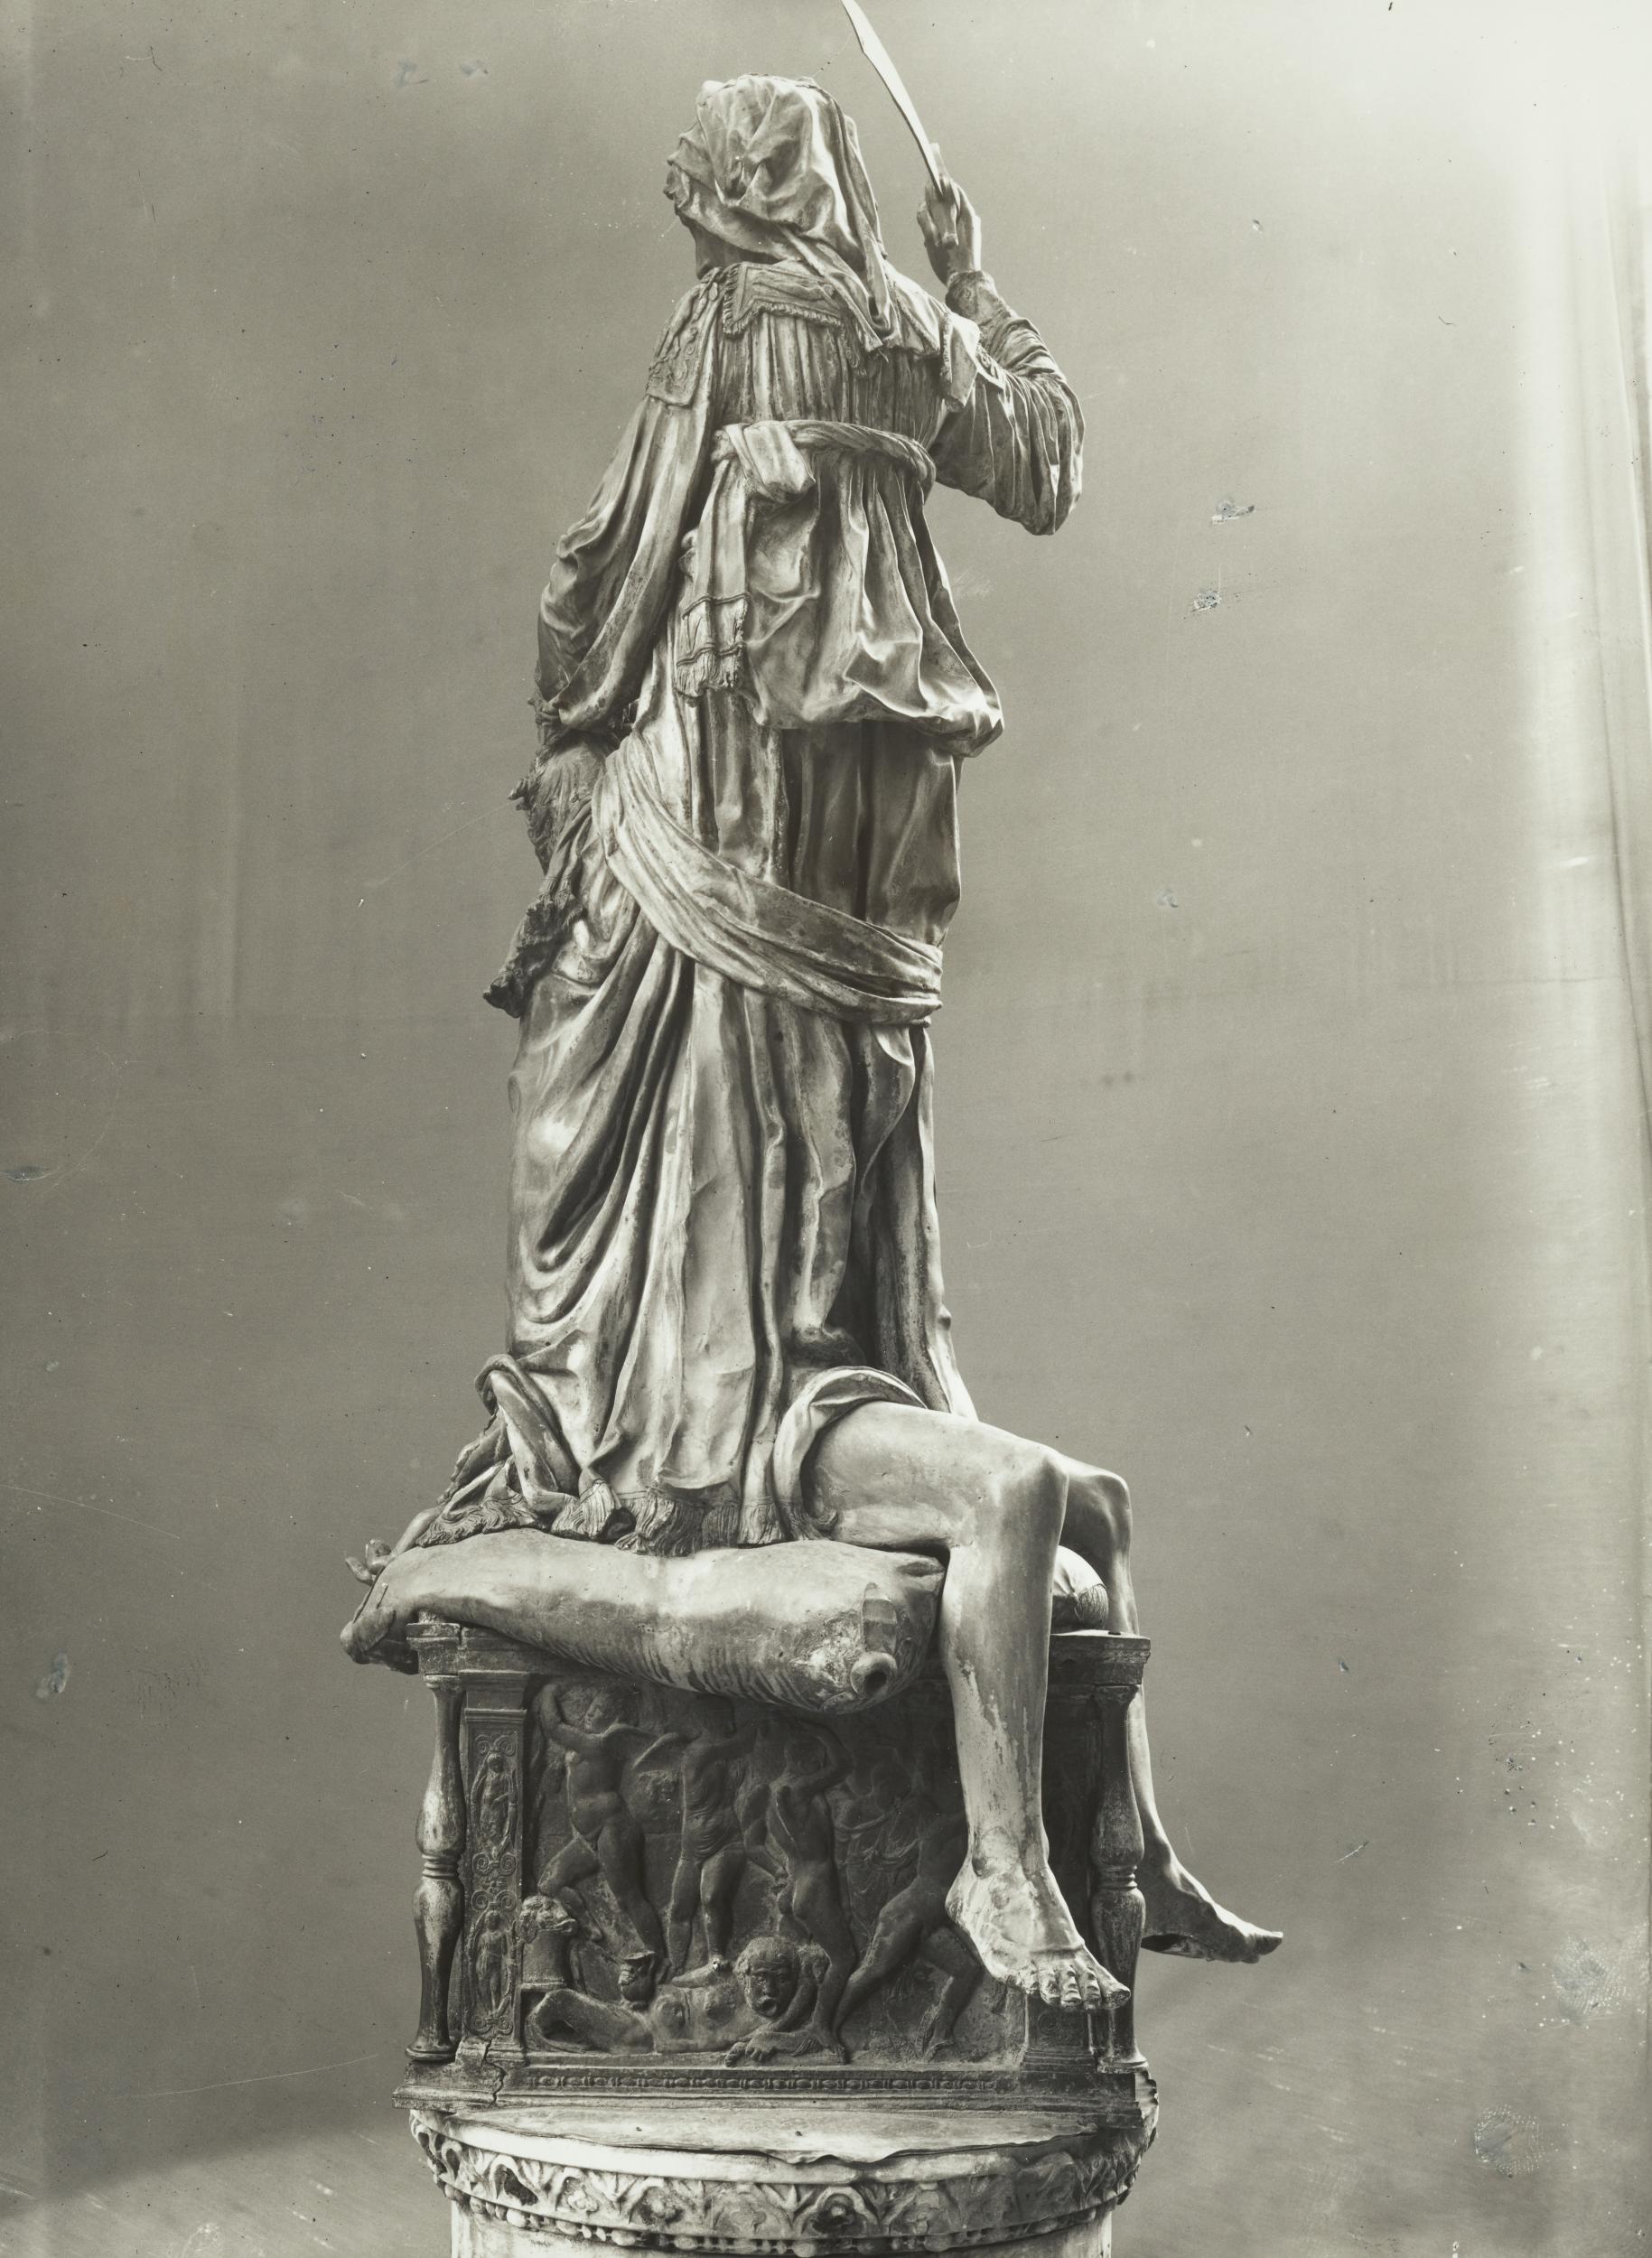 Gino Malenotti, Firenze - Piazza della Signoria oggi a Palazzo Vecchio, La Giuditta, figura intera, 1931- 1938, gelatina ai sali d'argento, MPI6022128